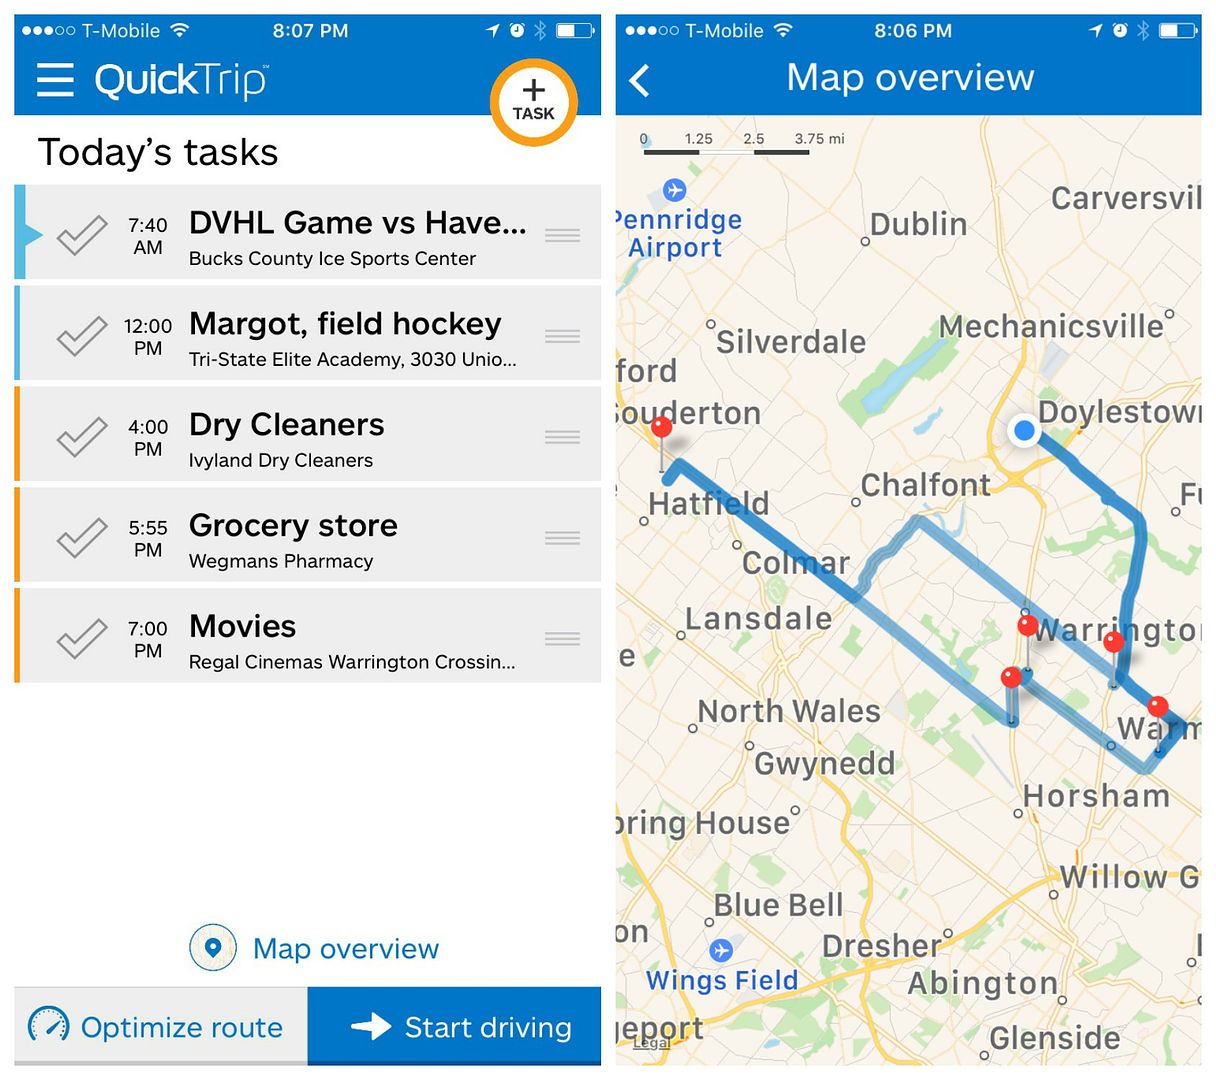  Die QuickTrip-App optimiert Ihre To-Do-Liste und bietet Ihnen die intelligentesten Routen, um Zeit zu sparen